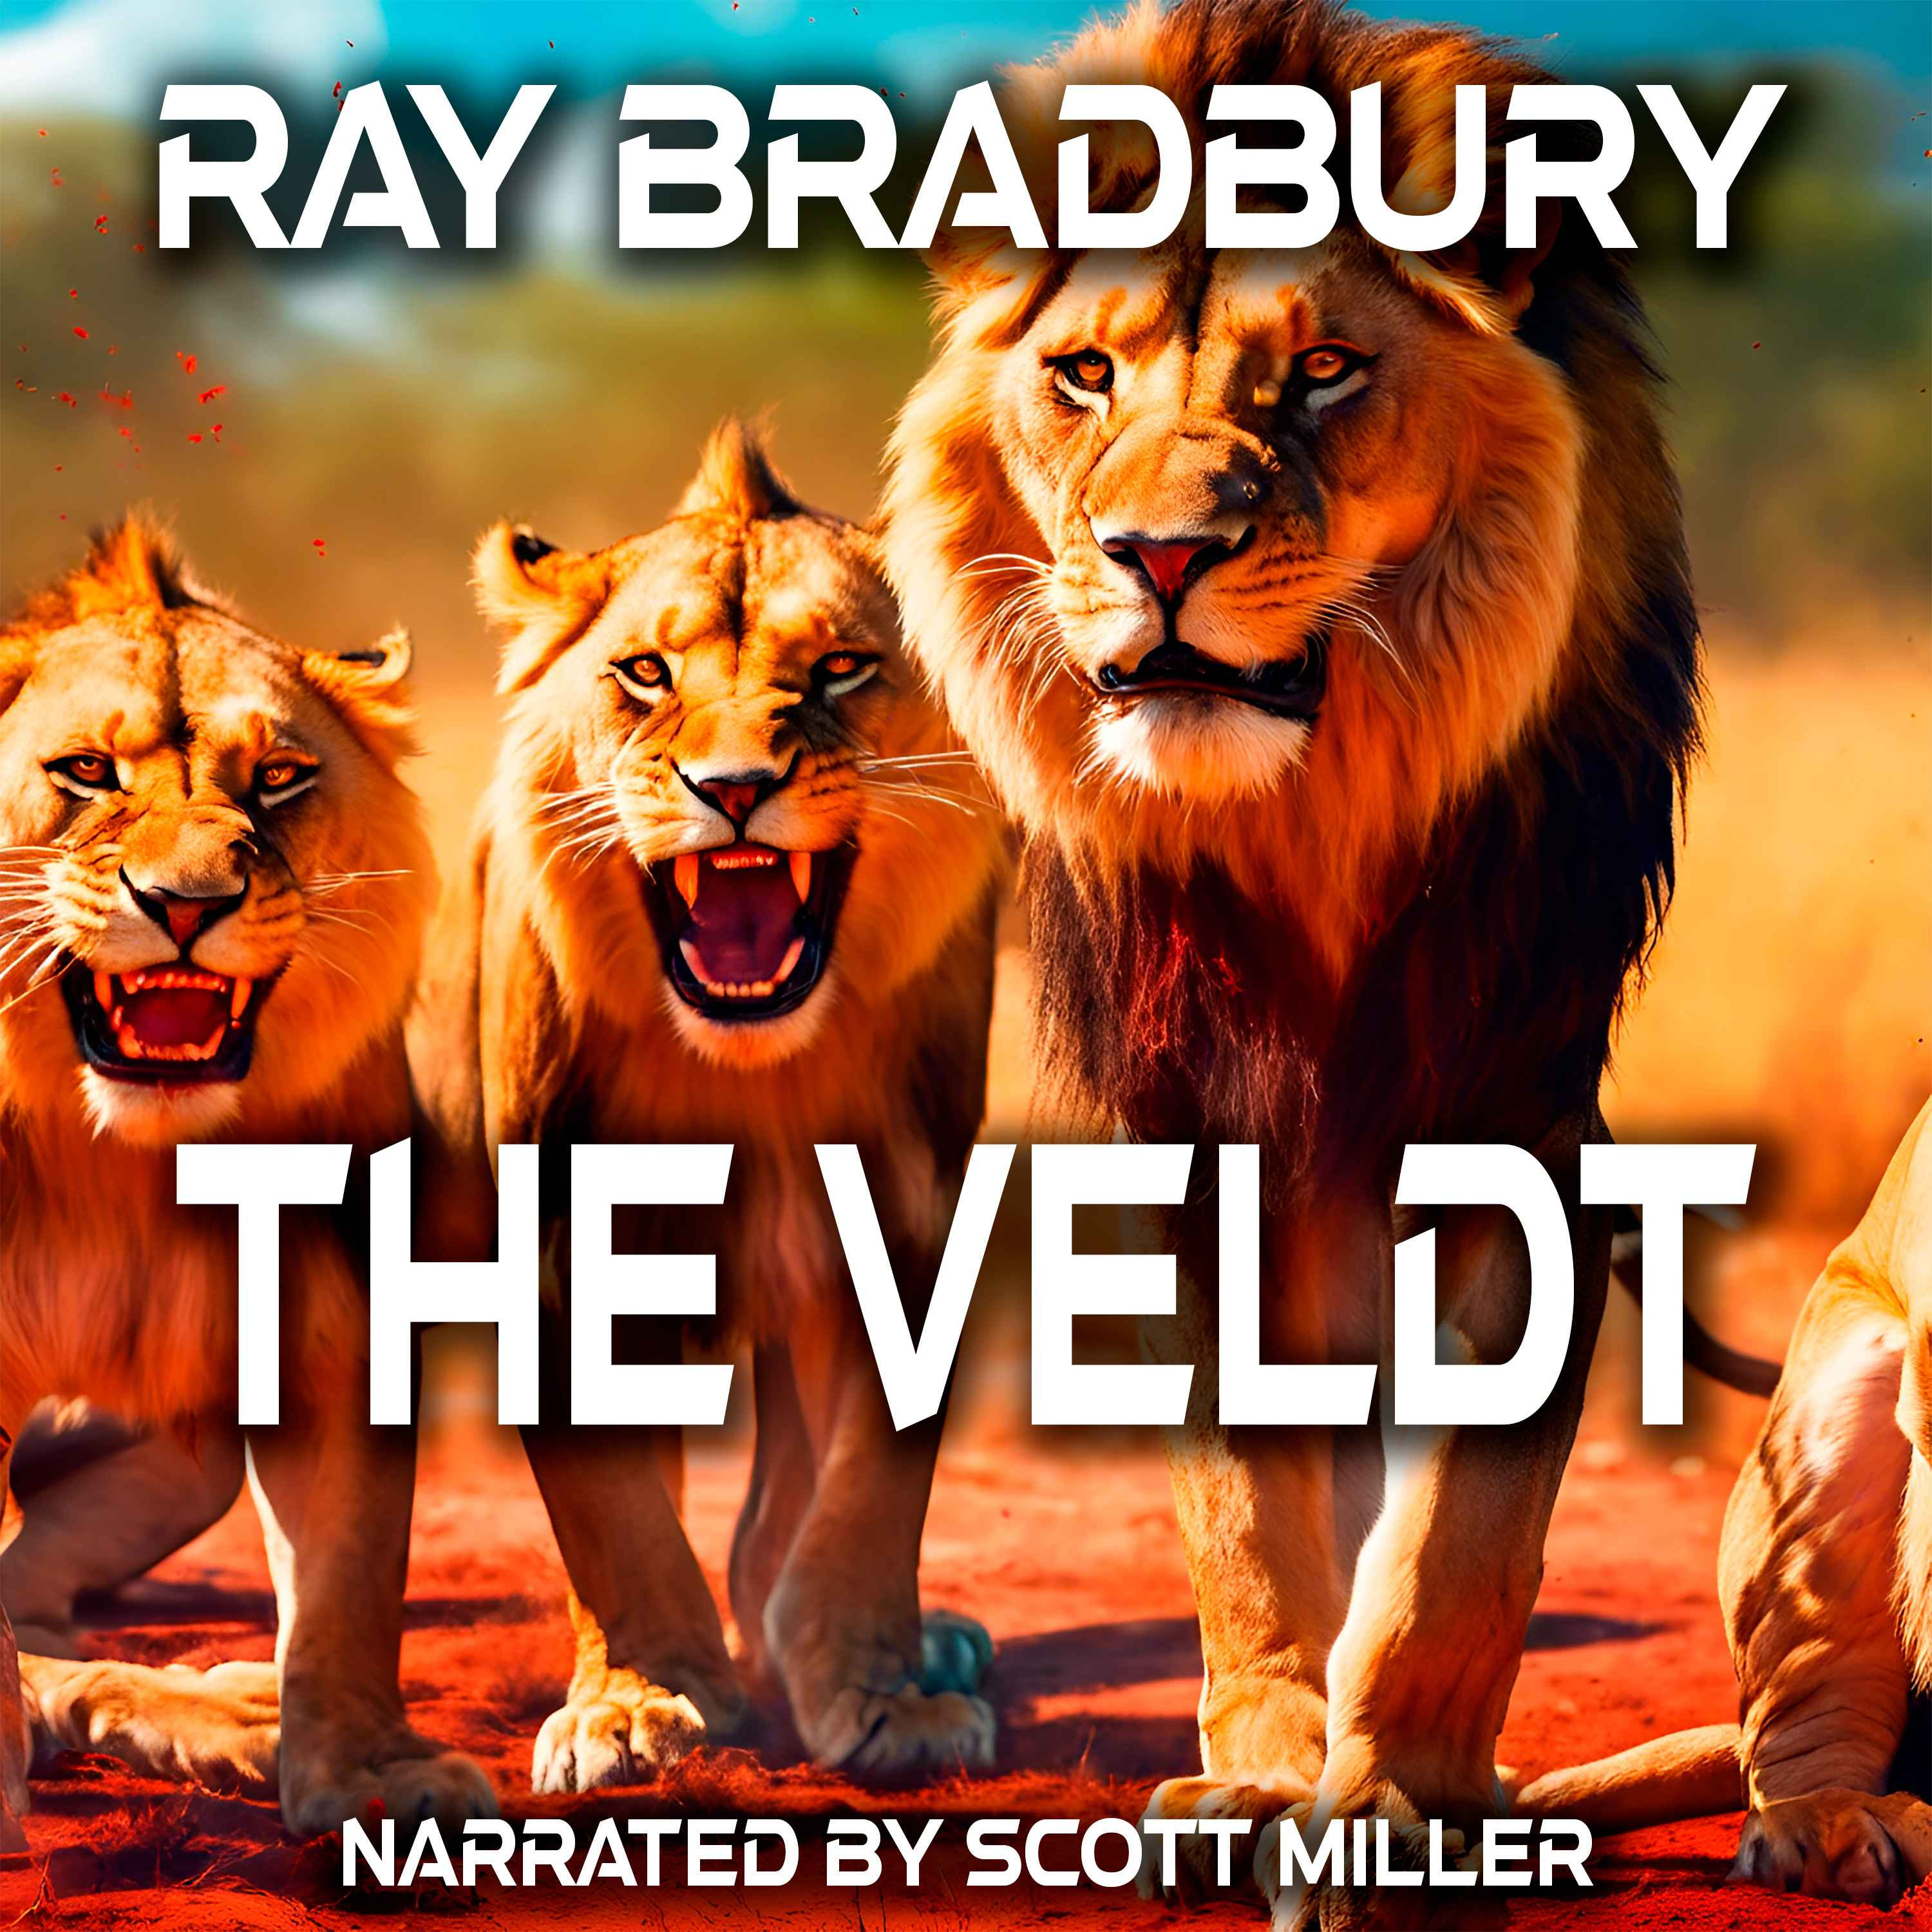 The Veldt by Ray Bradbury - Ray Bradbury Short Stories